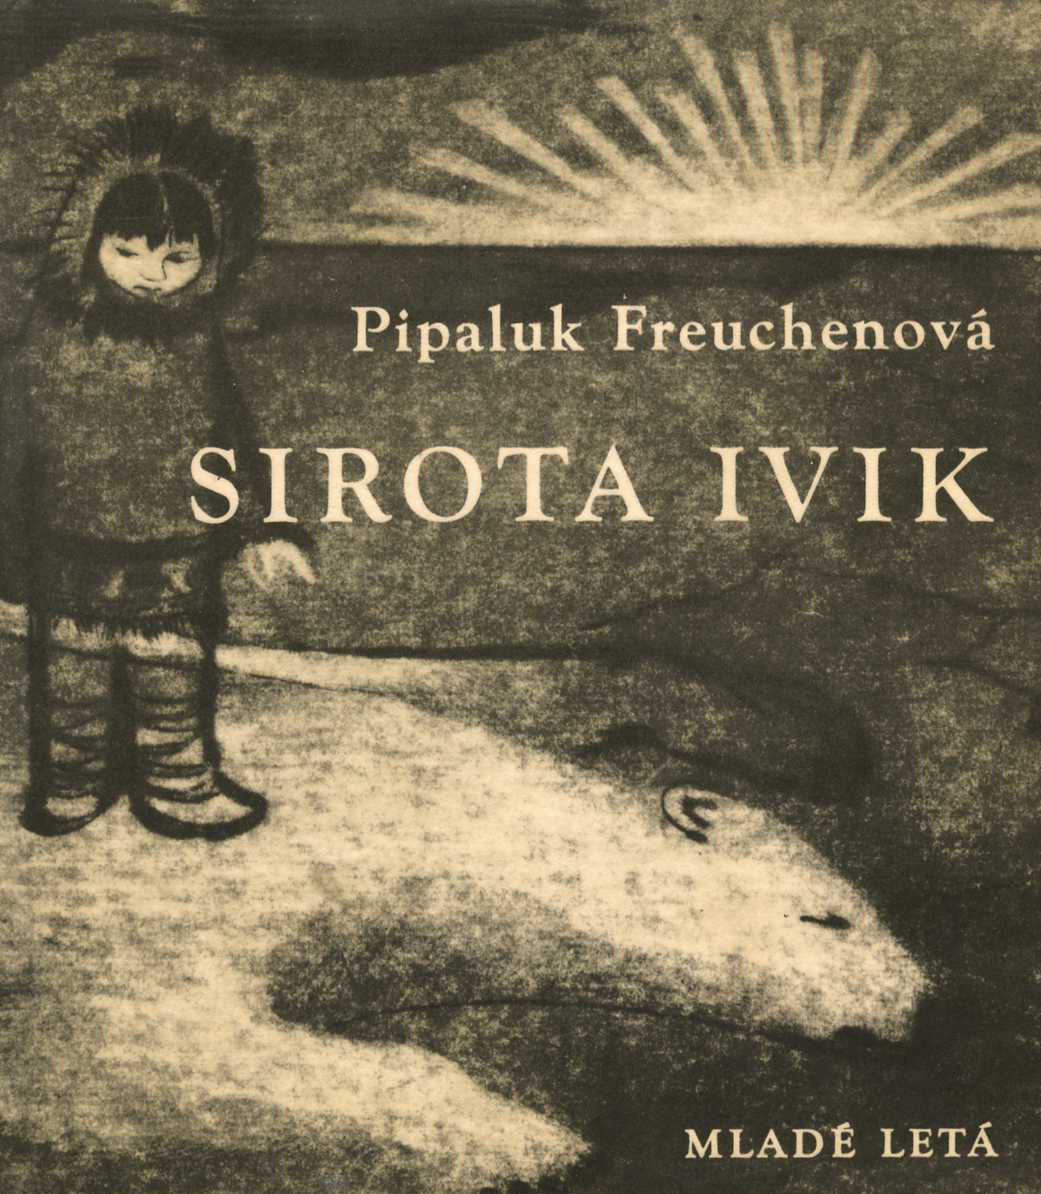 Sirota Ivik (Pipaluk Freuchenová)